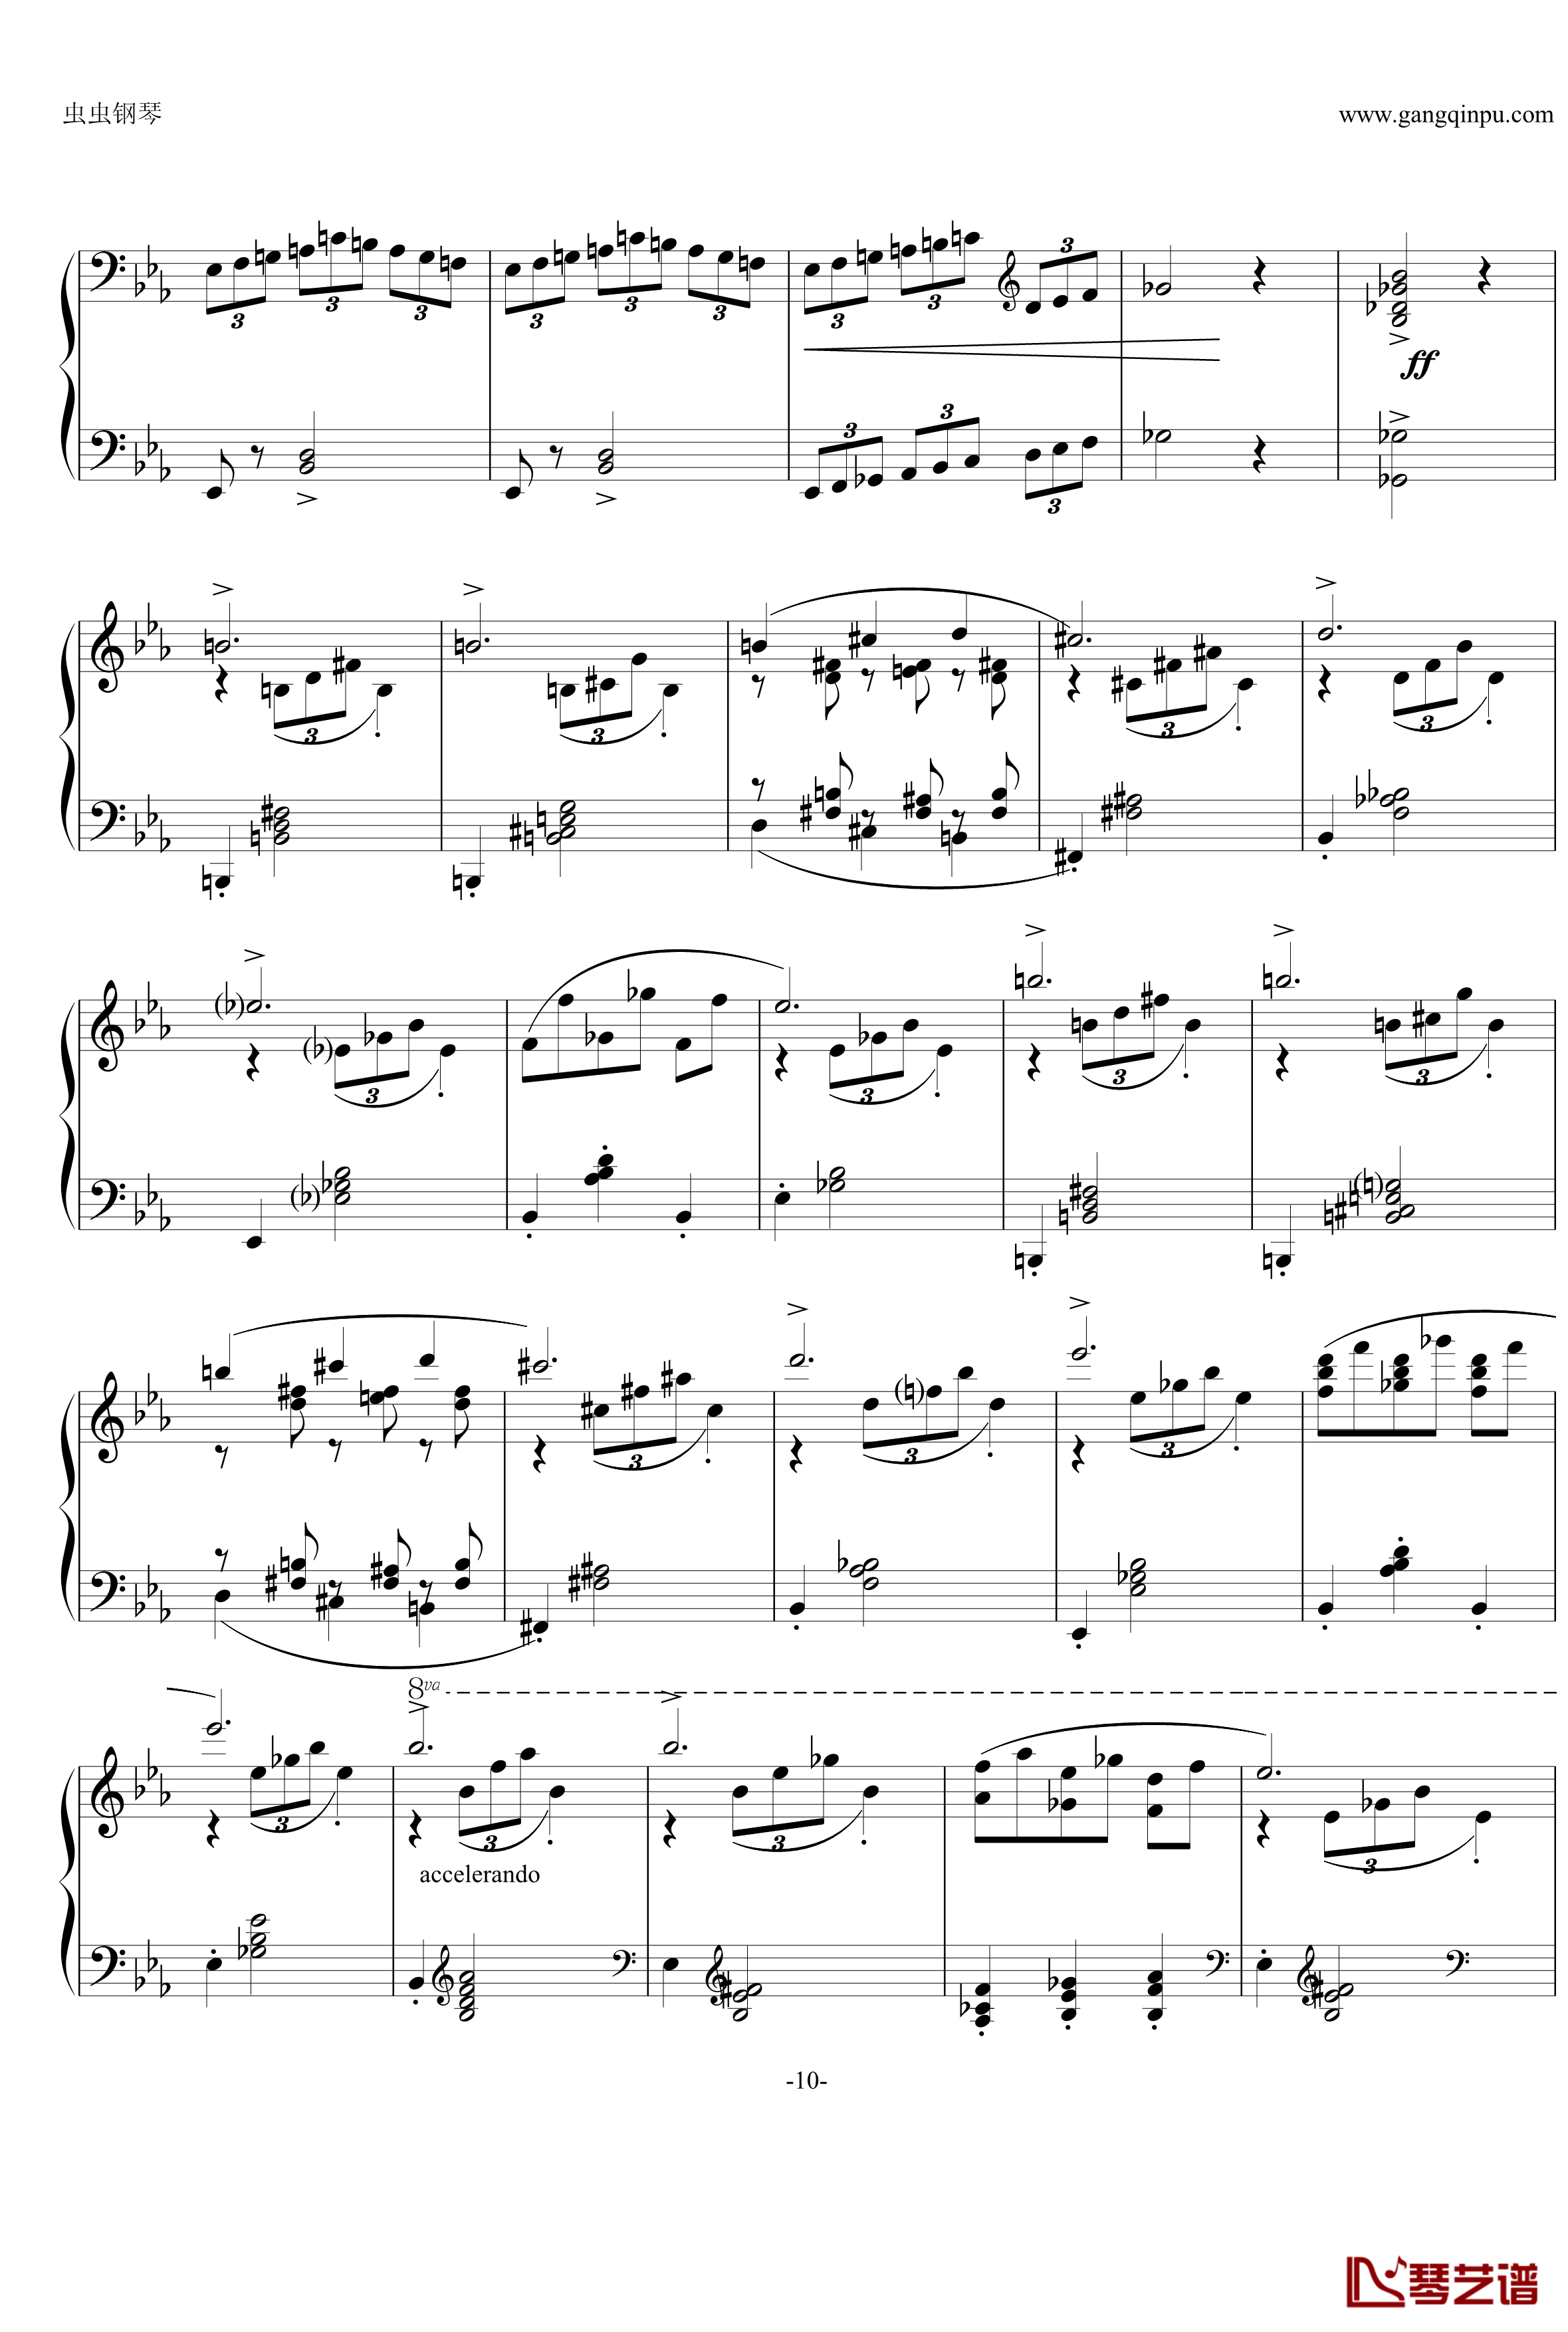 即兴曲Op.90 No.2钢琴谱-舒伯特-又名D899 No.210